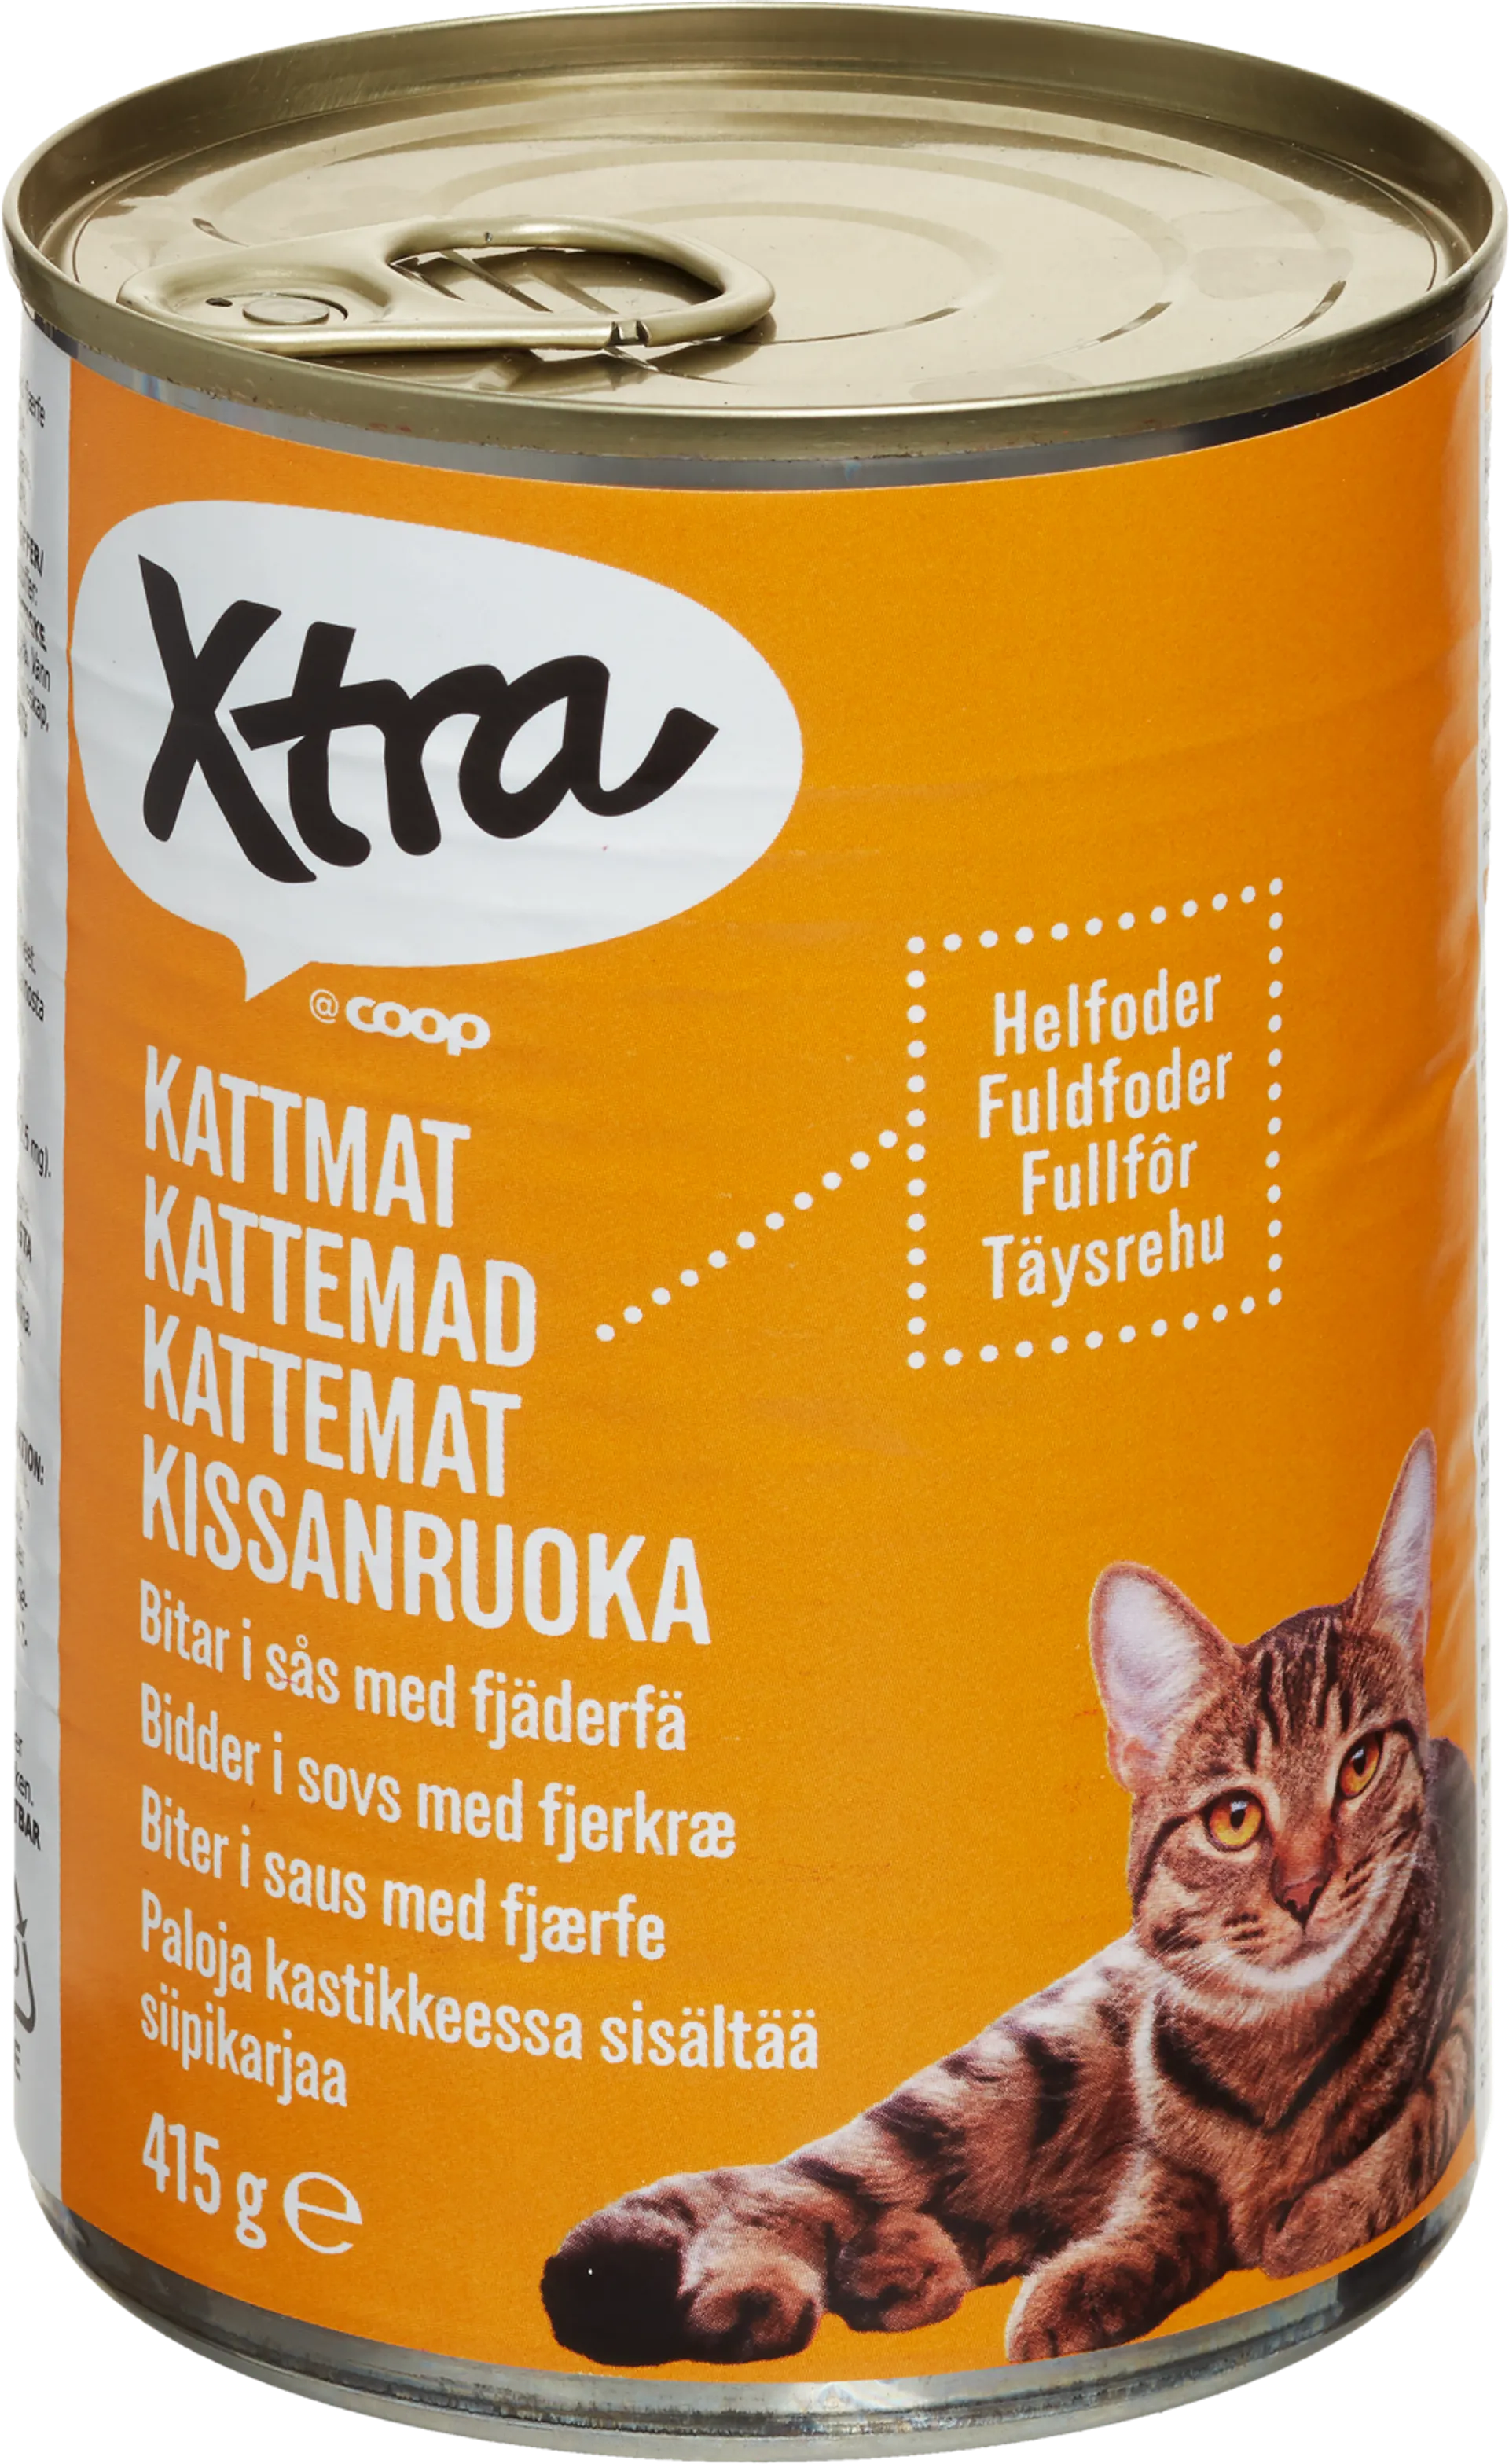 Xtra kissanruoka paloja kastikkeessa, sisältää siipikarjaa 415 g